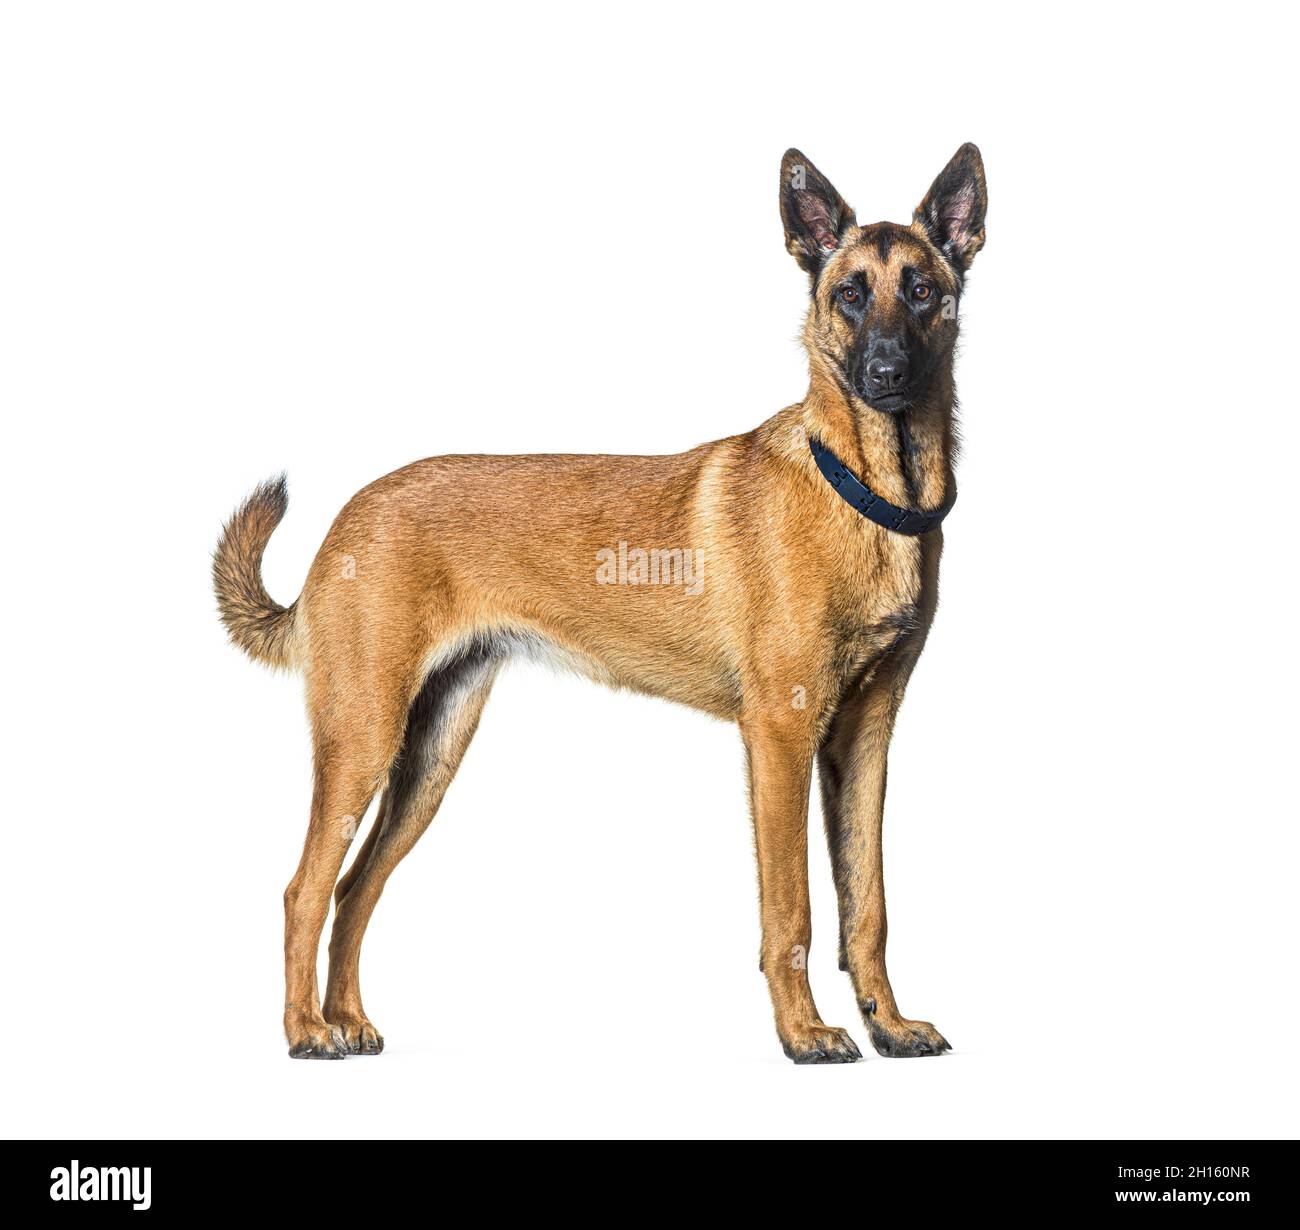 Vue latérale d'un chien Malinois debout regardant l'appareil photo et portant un collier, isolé sur blanc Banque D'Images